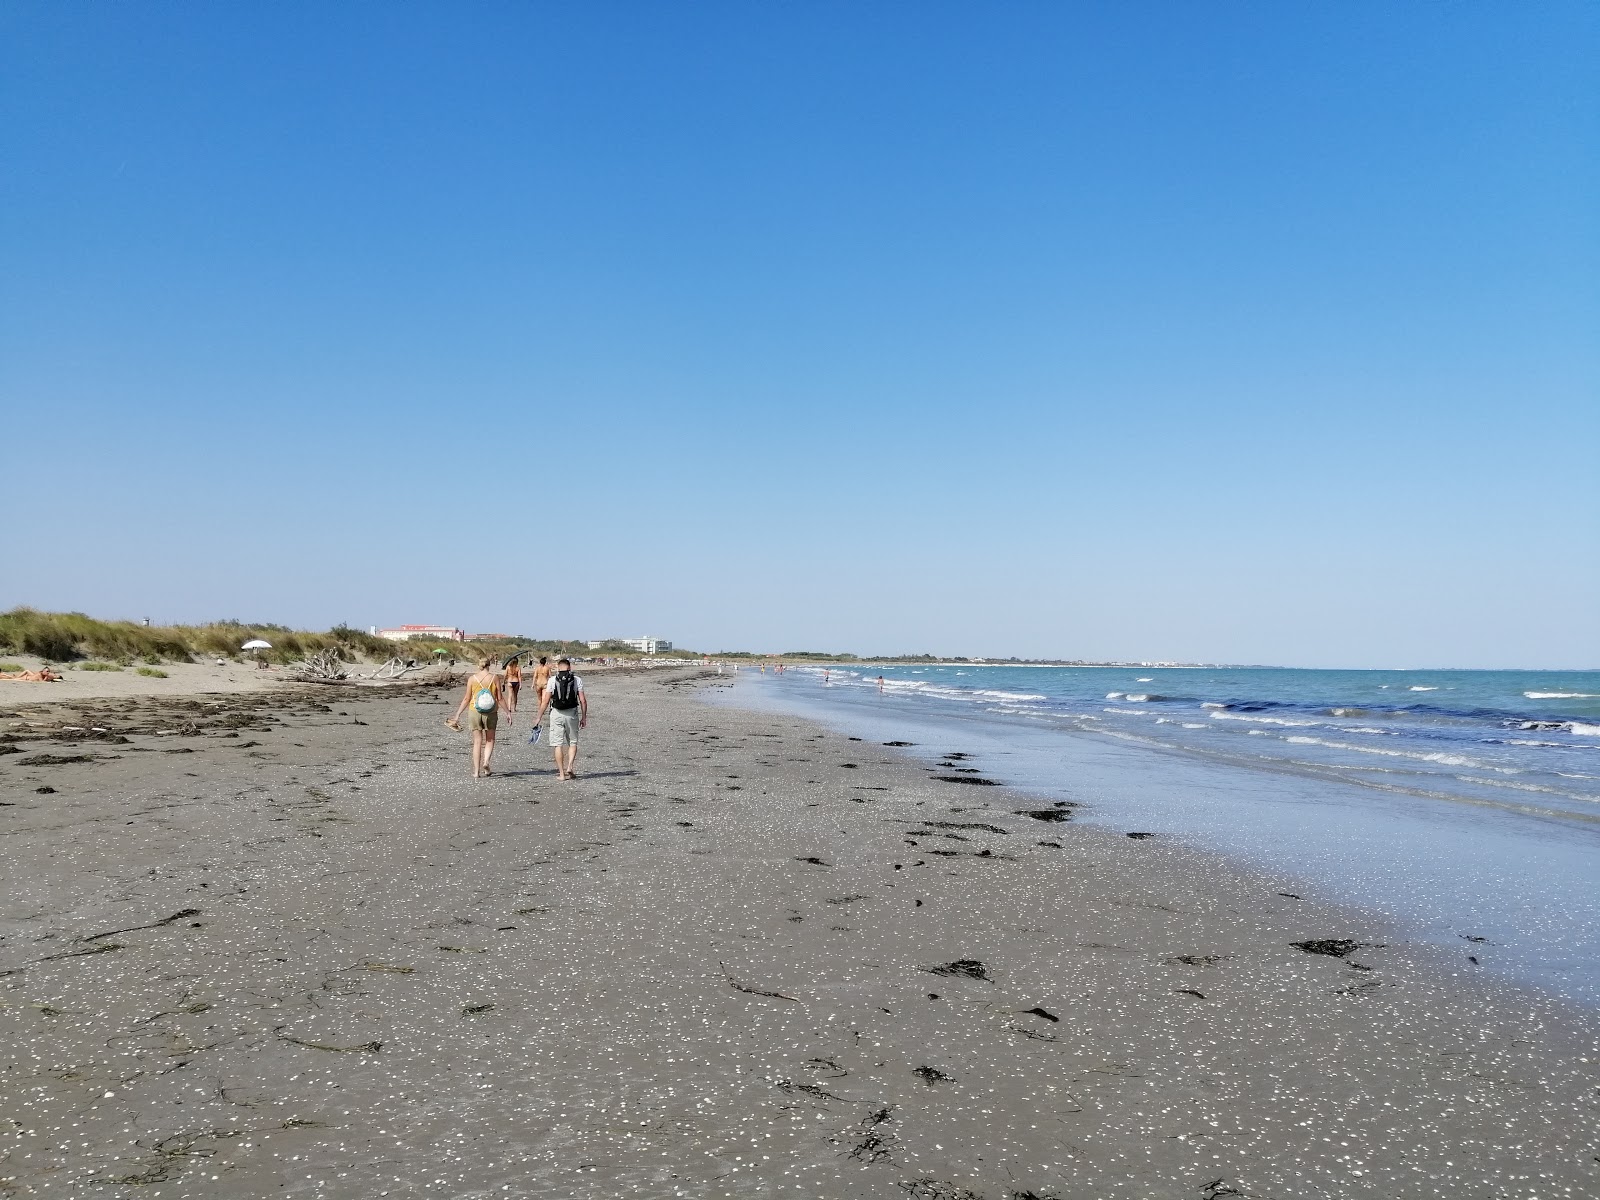 阿尔贝罗尼海滩的照片 带有明亮的沙子表面